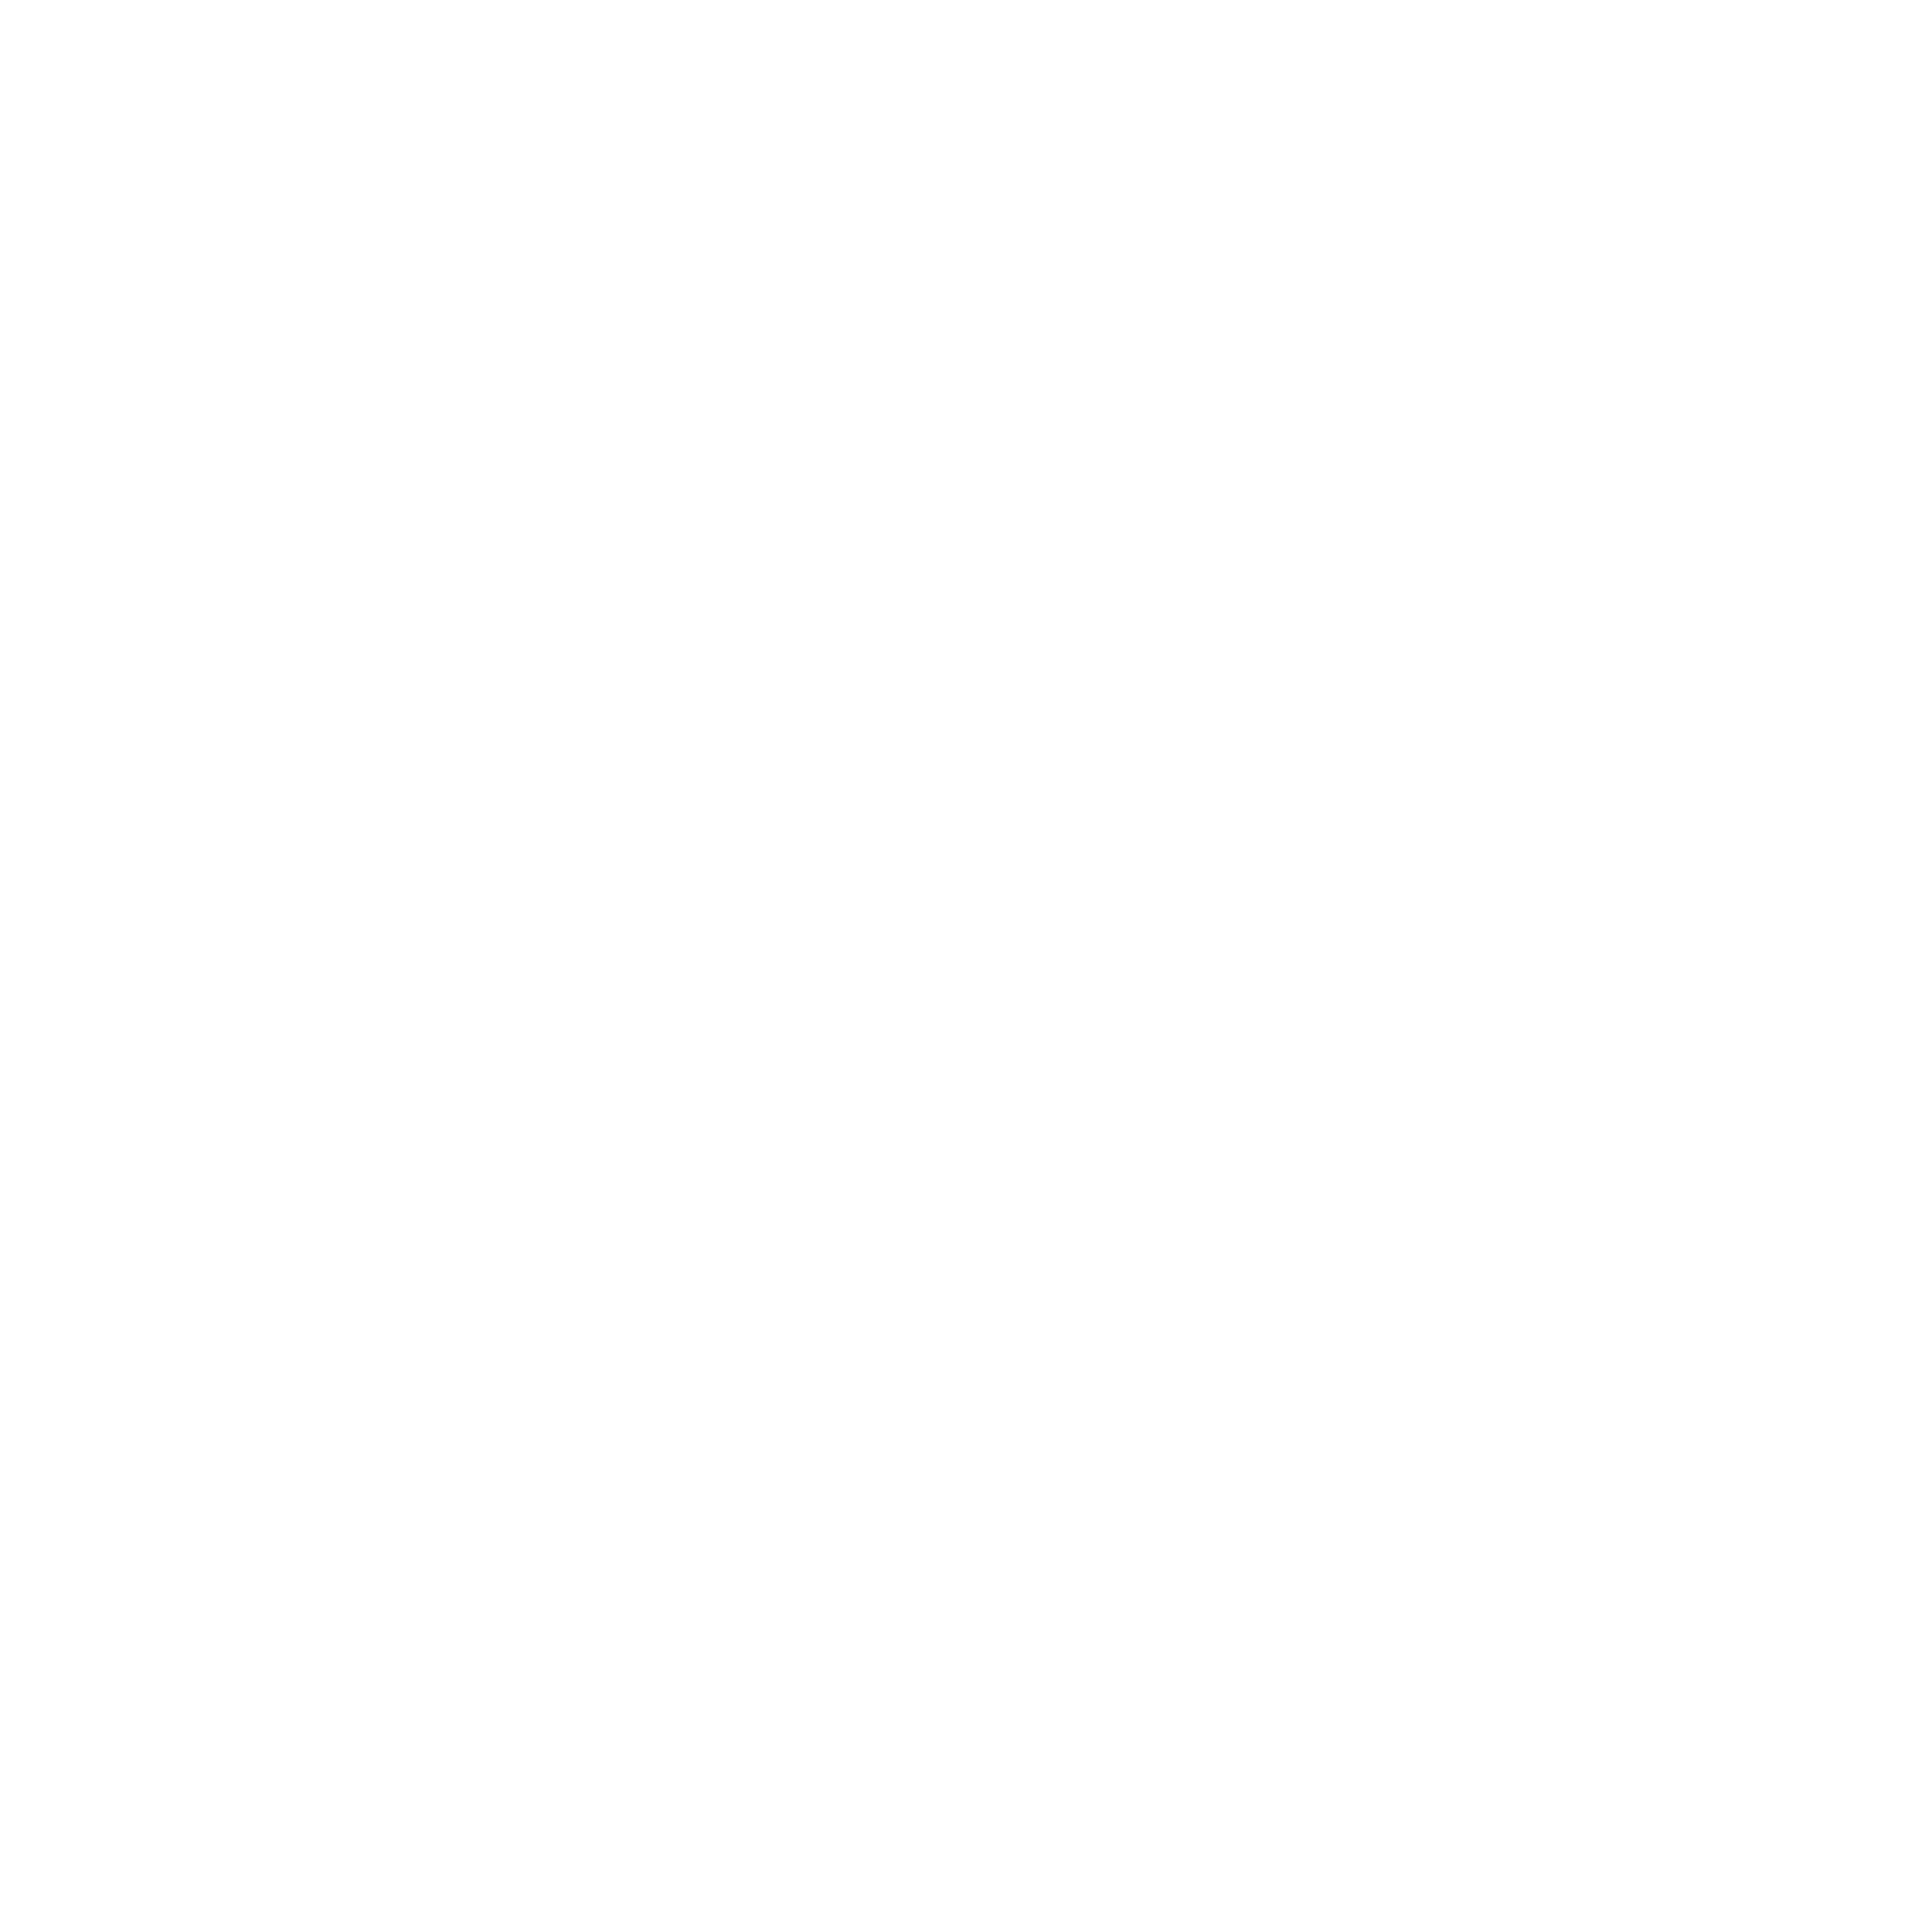 Hs2 travel